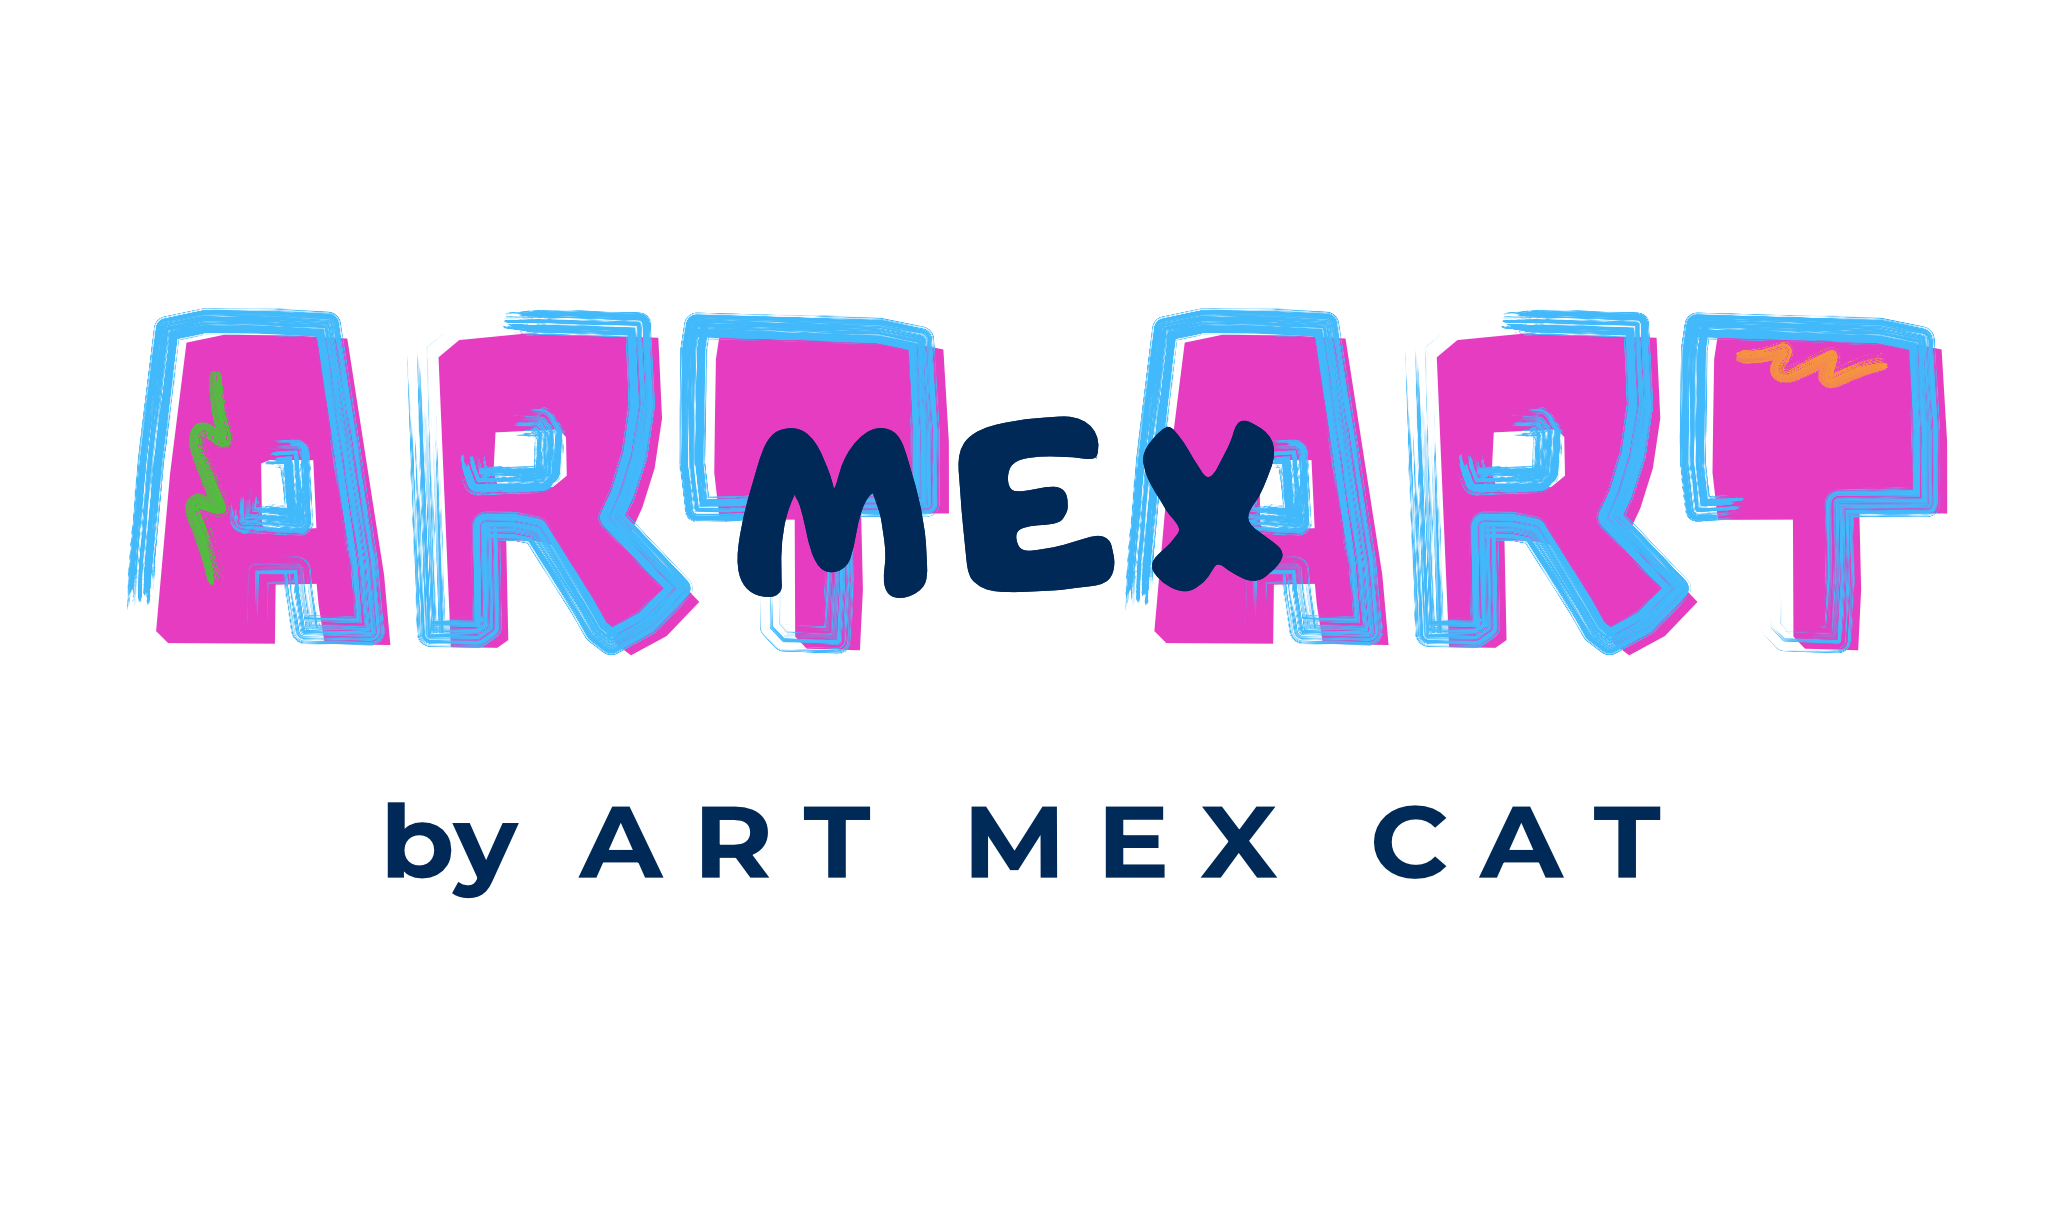 ArtMexArt